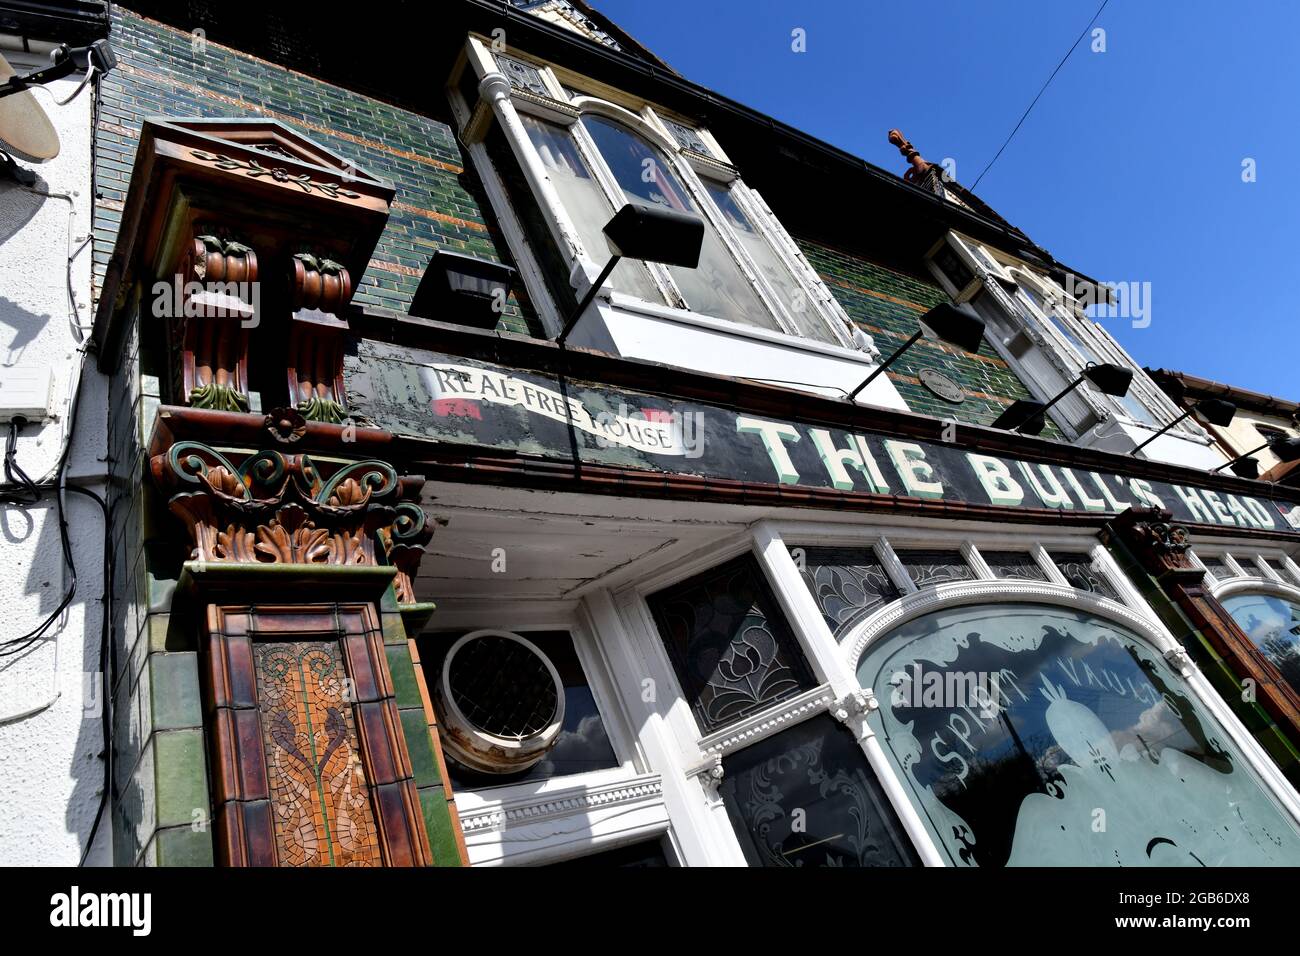 La maison publique de Bull's Head est un pub anglais classique et un bâtiment classé de classe 2 qui a fermé et mis en vente Banque D'Images